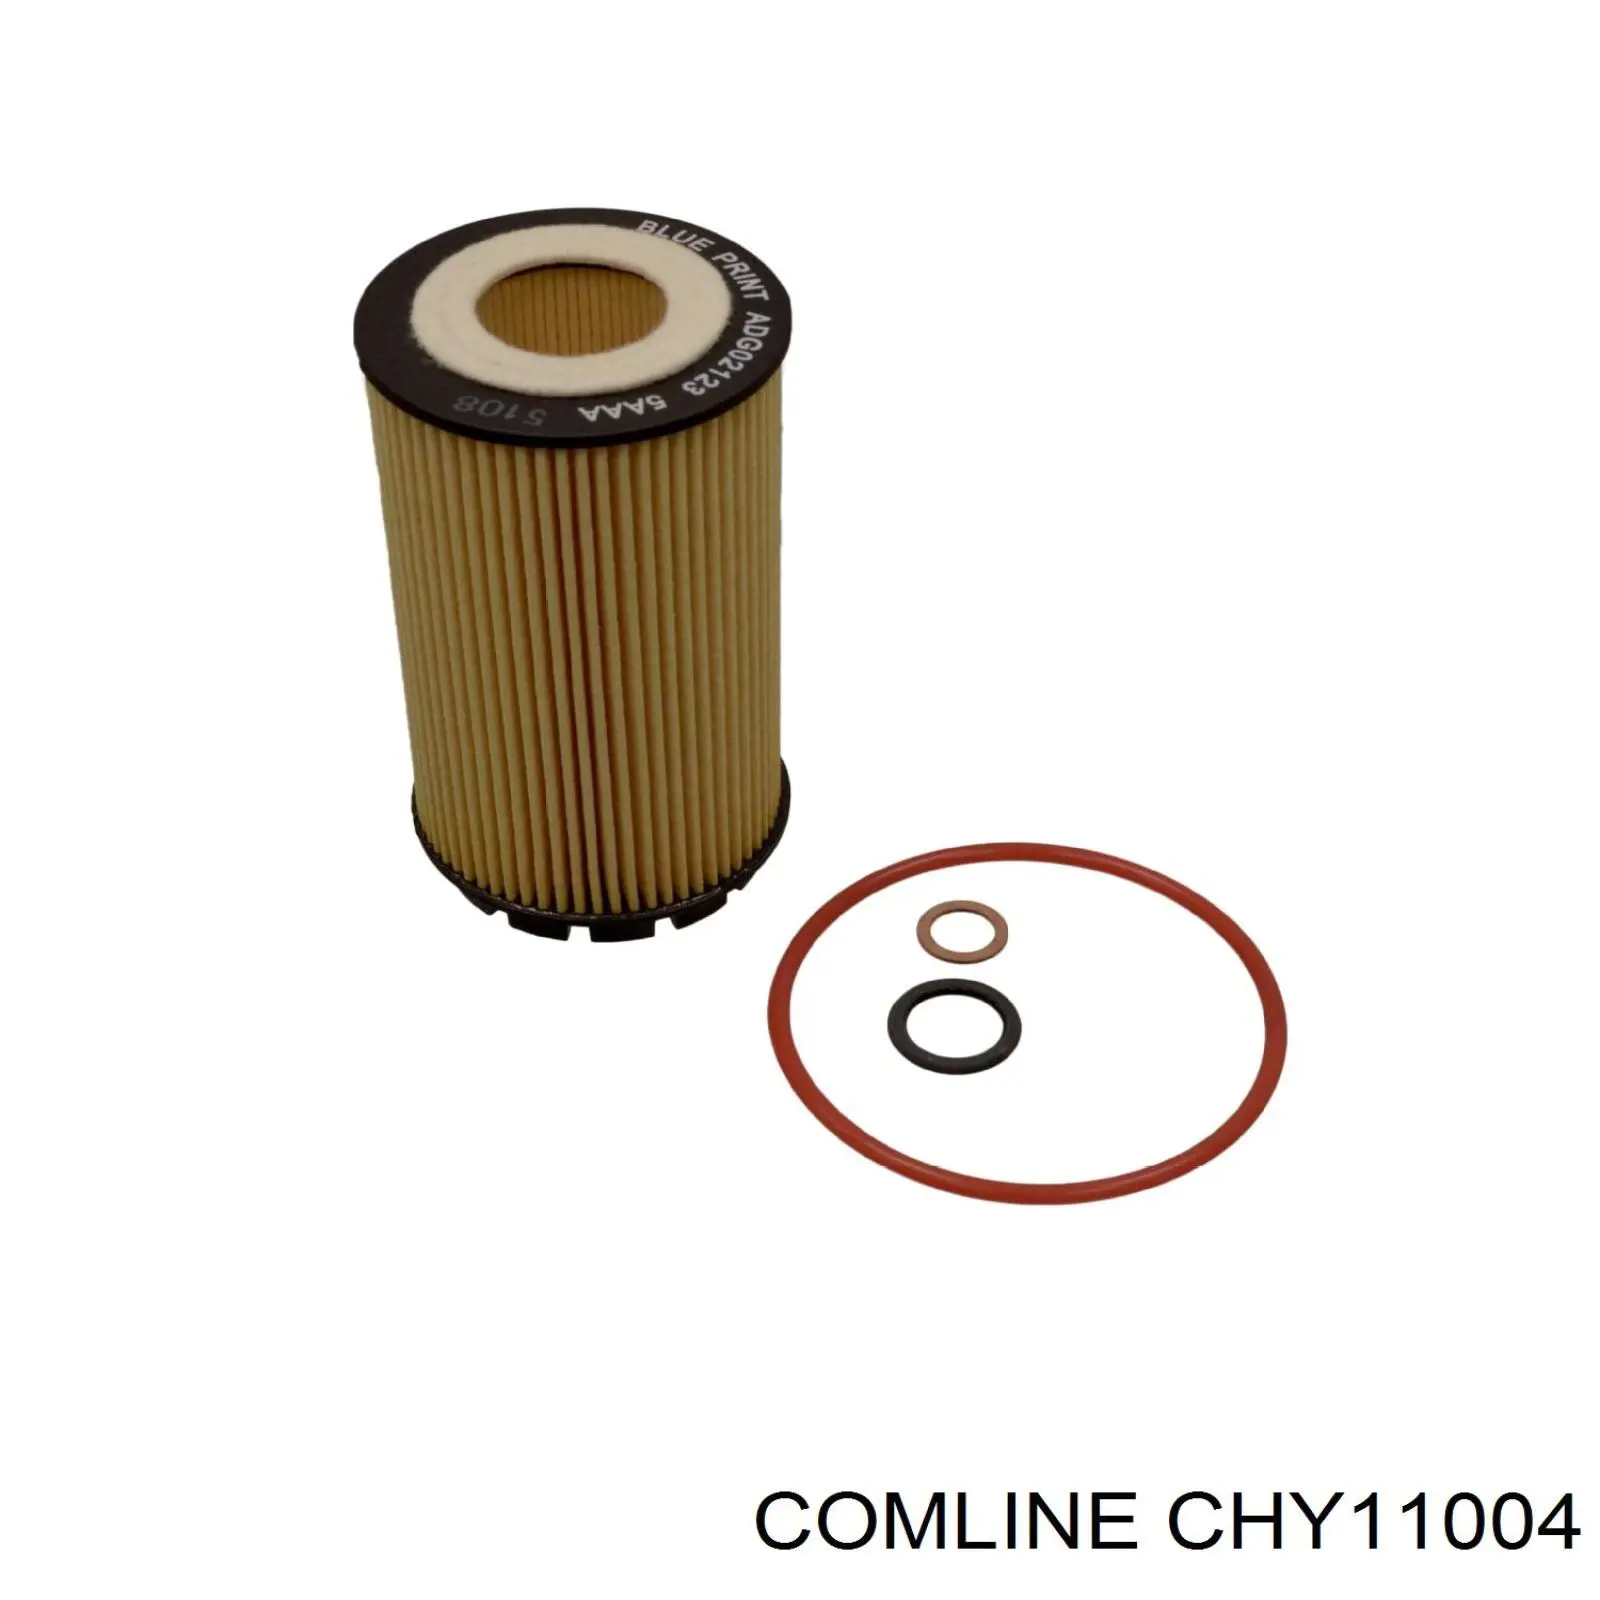 CHY11004 Comline filtro de aceite